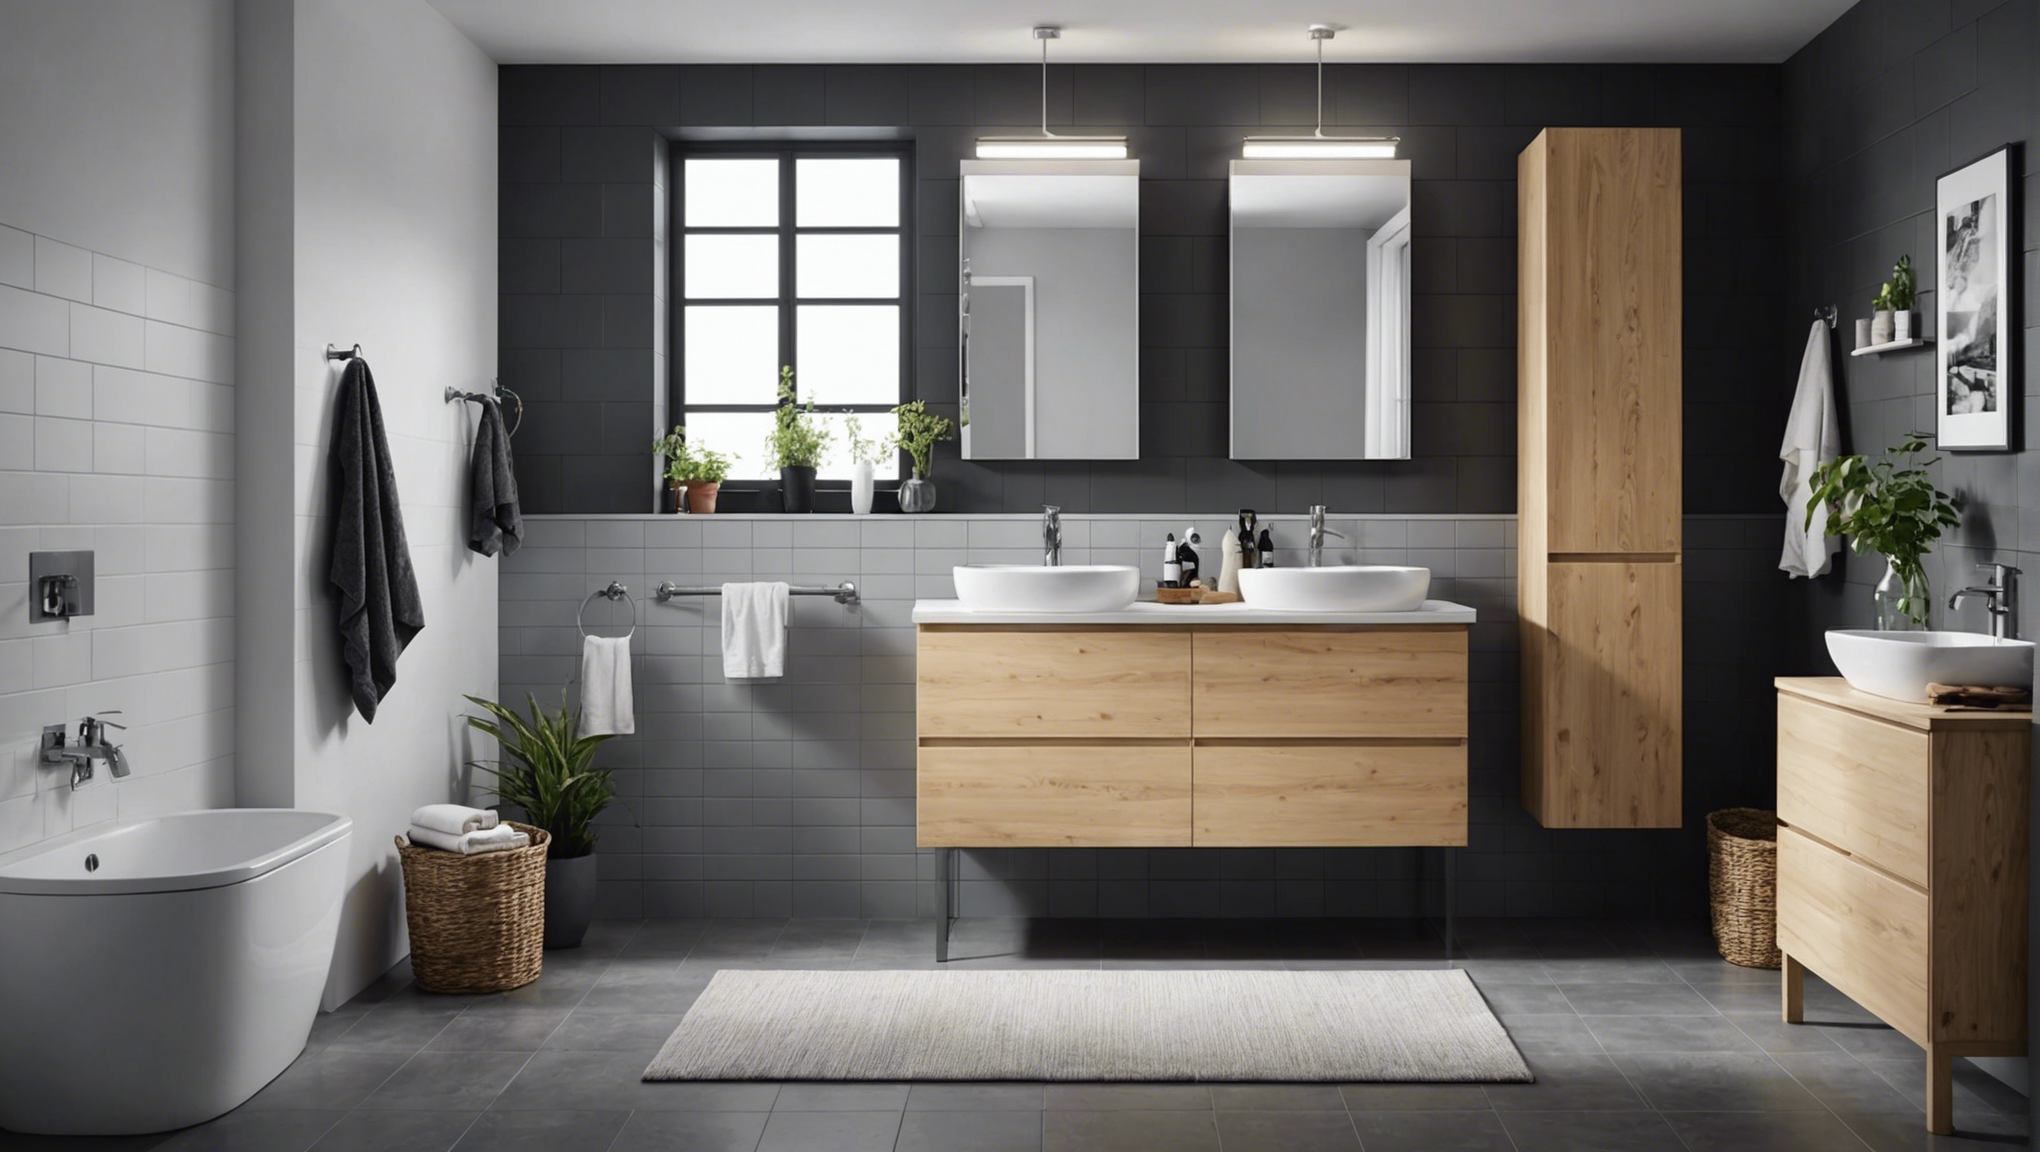 découvrez nos conseils pour choisir le meilleur meuble de salle de bain chez ikea et optimiser l'aménagement de votre espace avec style et praticité.